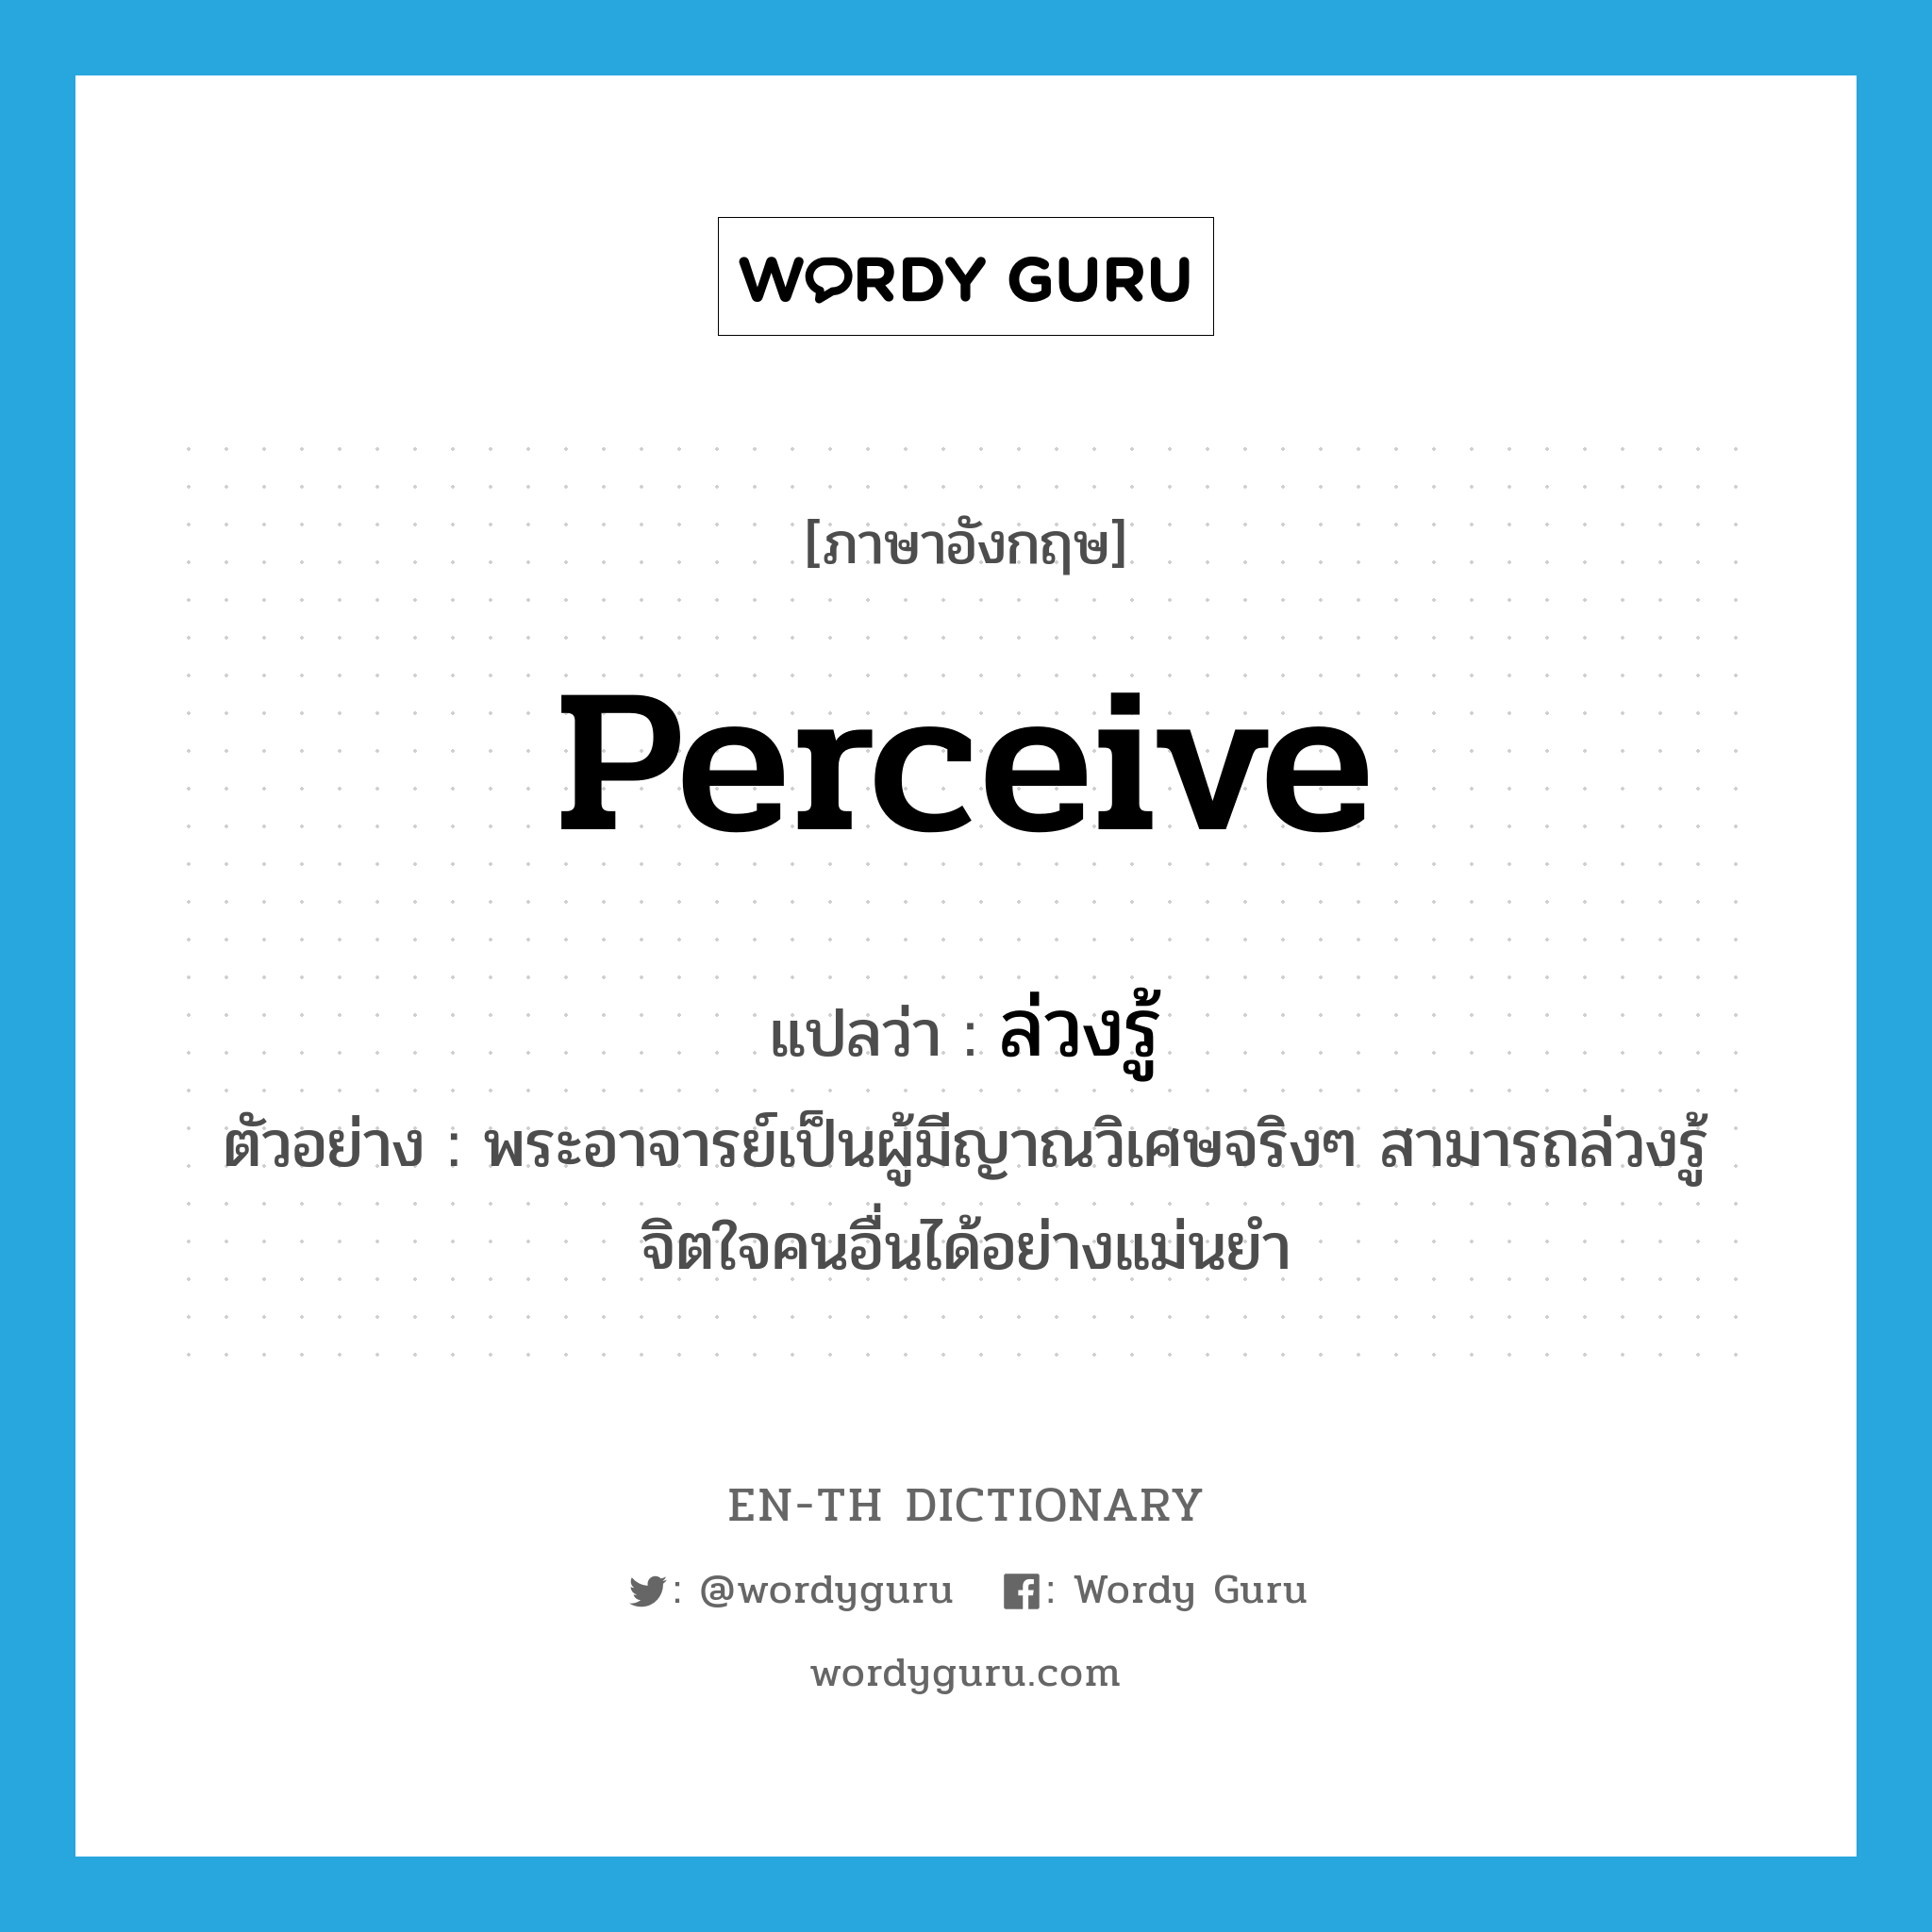 perceive แปลว่า?, คำศัพท์ภาษาอังกฤษ perceive แปลว่า ล่วงรู้ ประเภท V ตัวอย่าง พระอาจารย์เป็นผู้มีญาณวิเศษจริงๆ สามารถล่วงรู้จิตใจคนอื่นได้อย่างแม่นยำ หมวด V